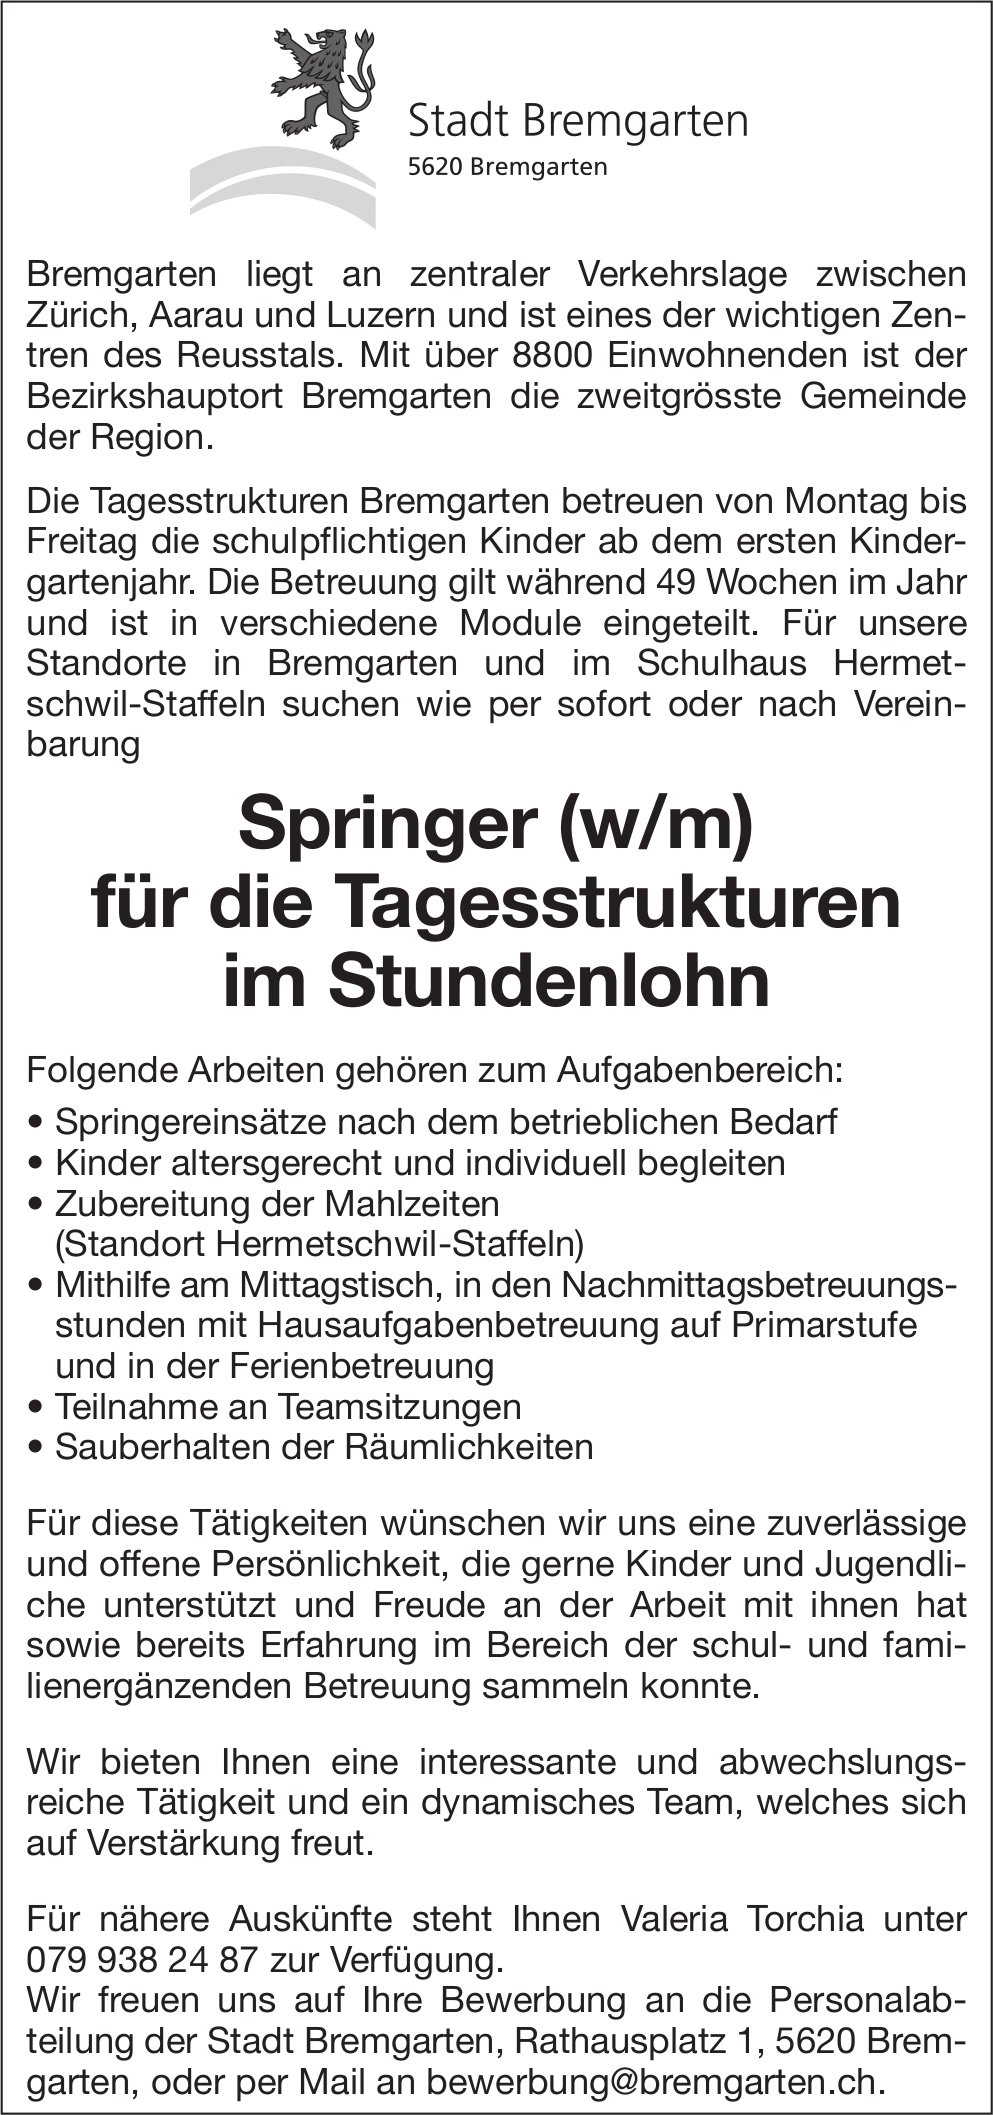 Springer (w/m) für die Tagesstrukturen, Stadt, Bremgarten, gesucht